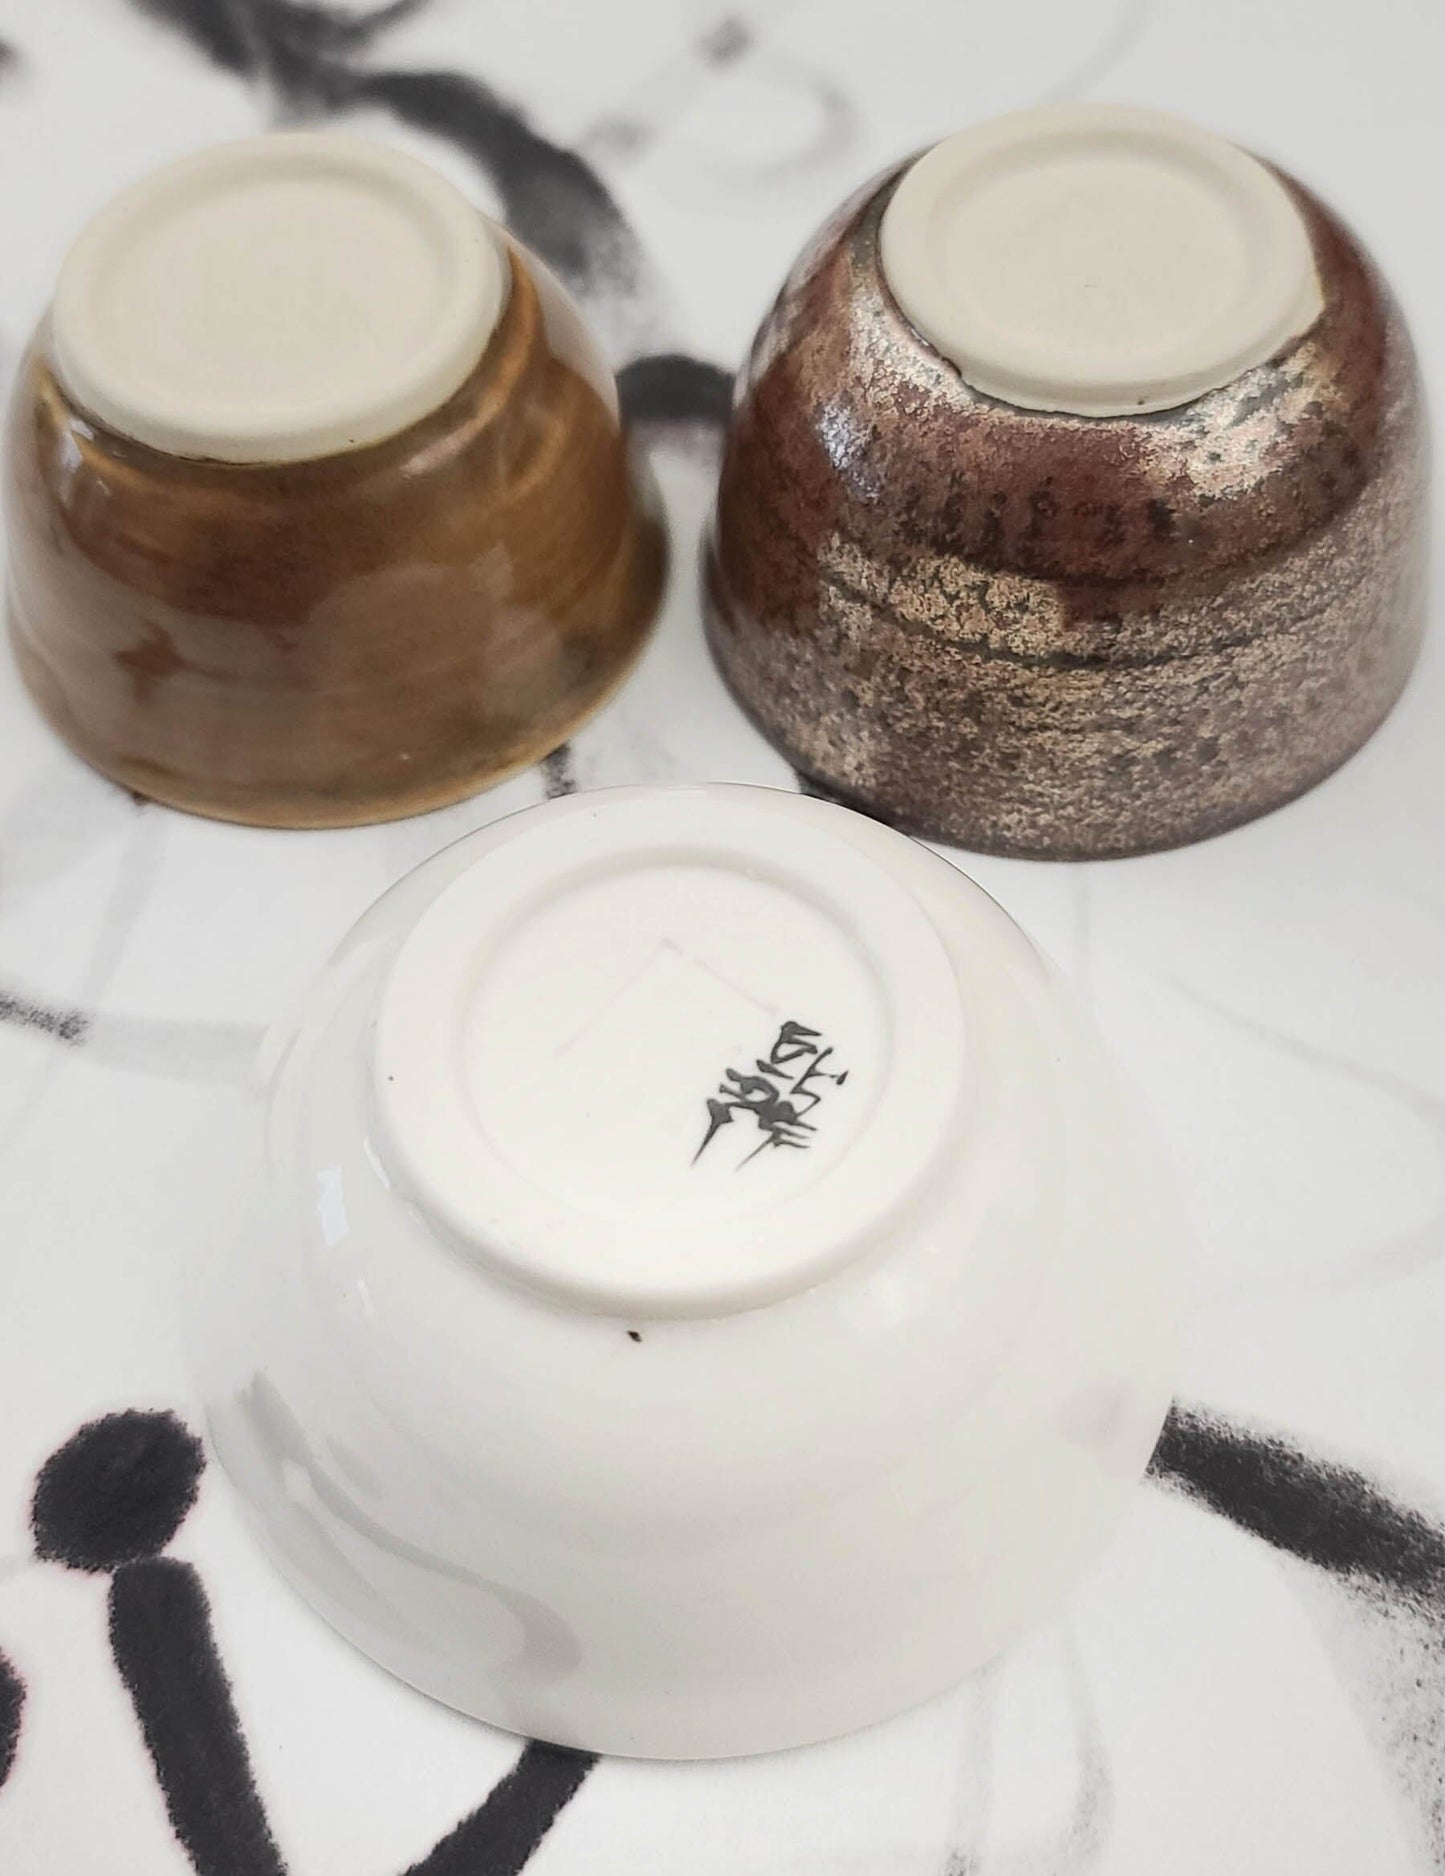 Ink Bowls Art Supplies Elizabeth Schowachert Art